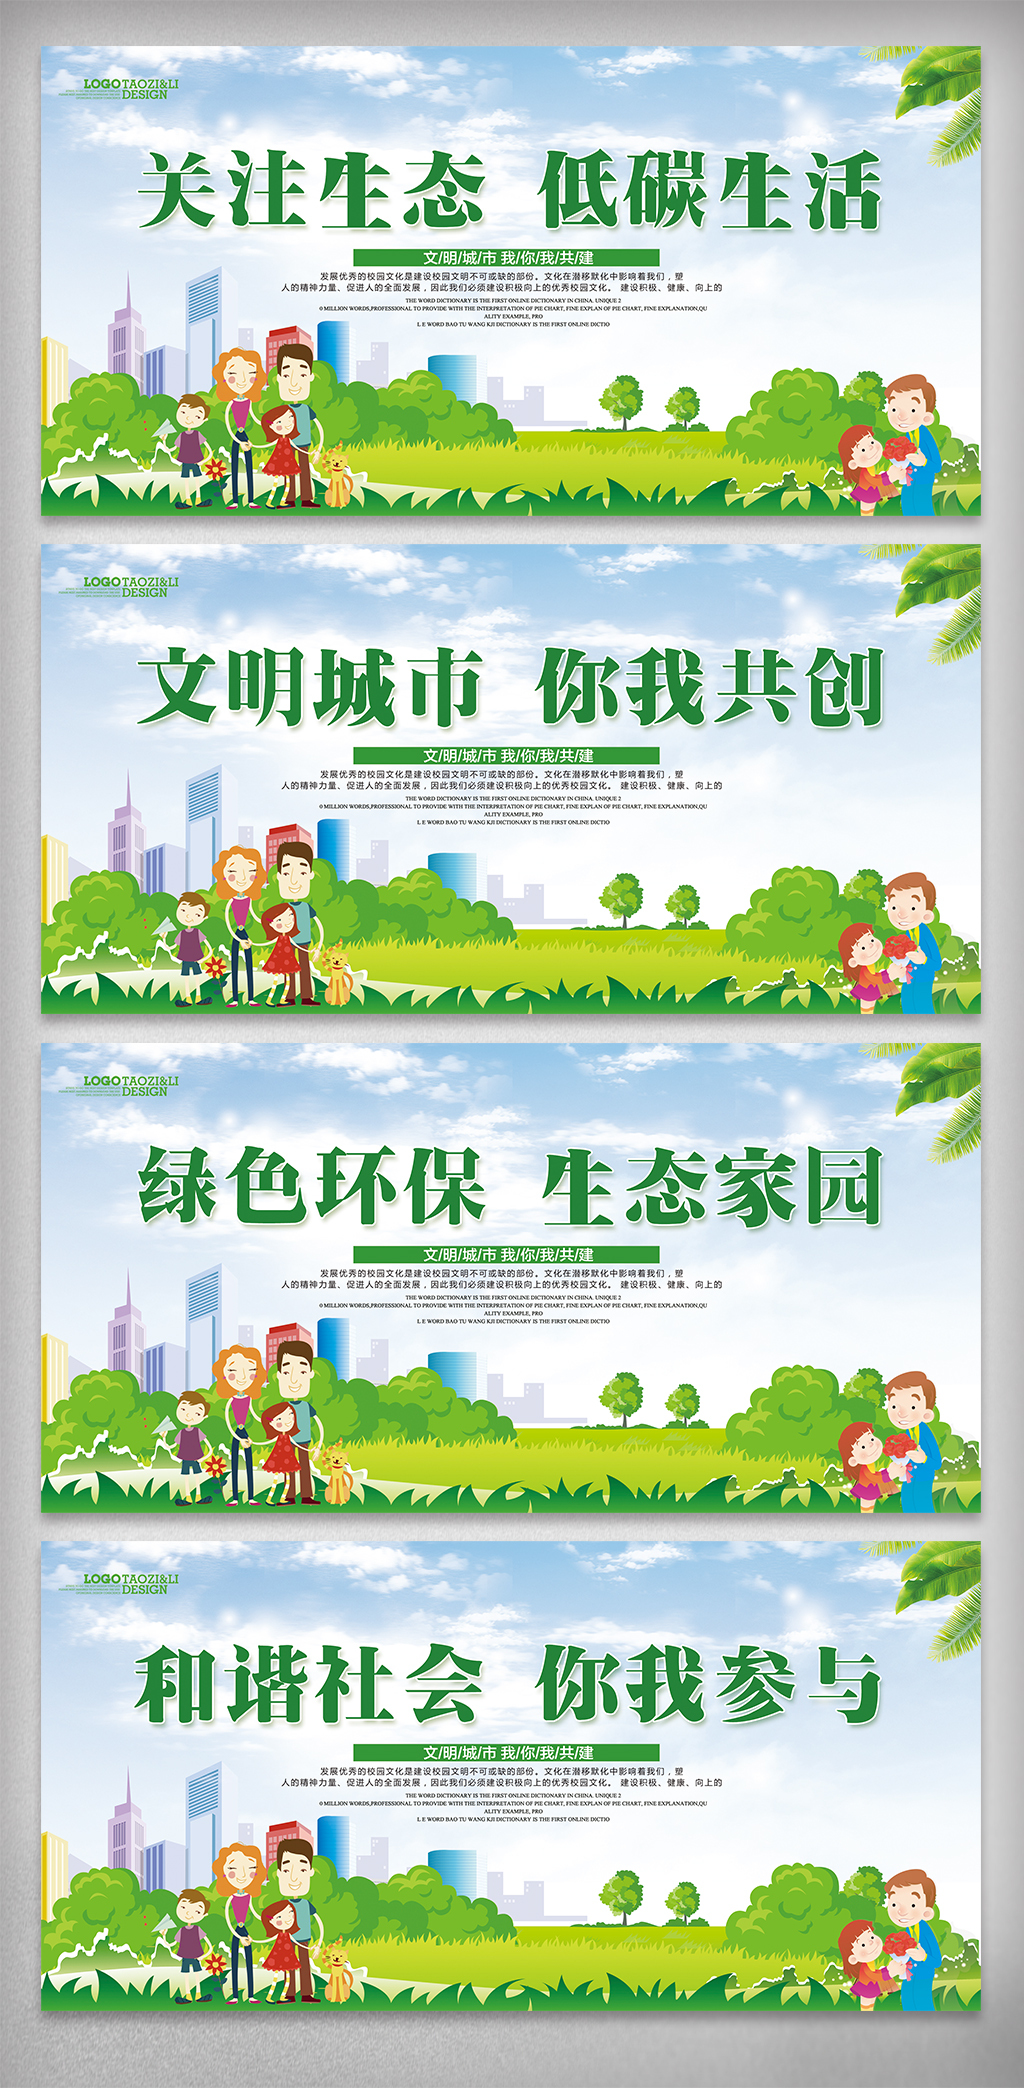 共建绿色环保低碳文化城市宣传挂画设计模板图片